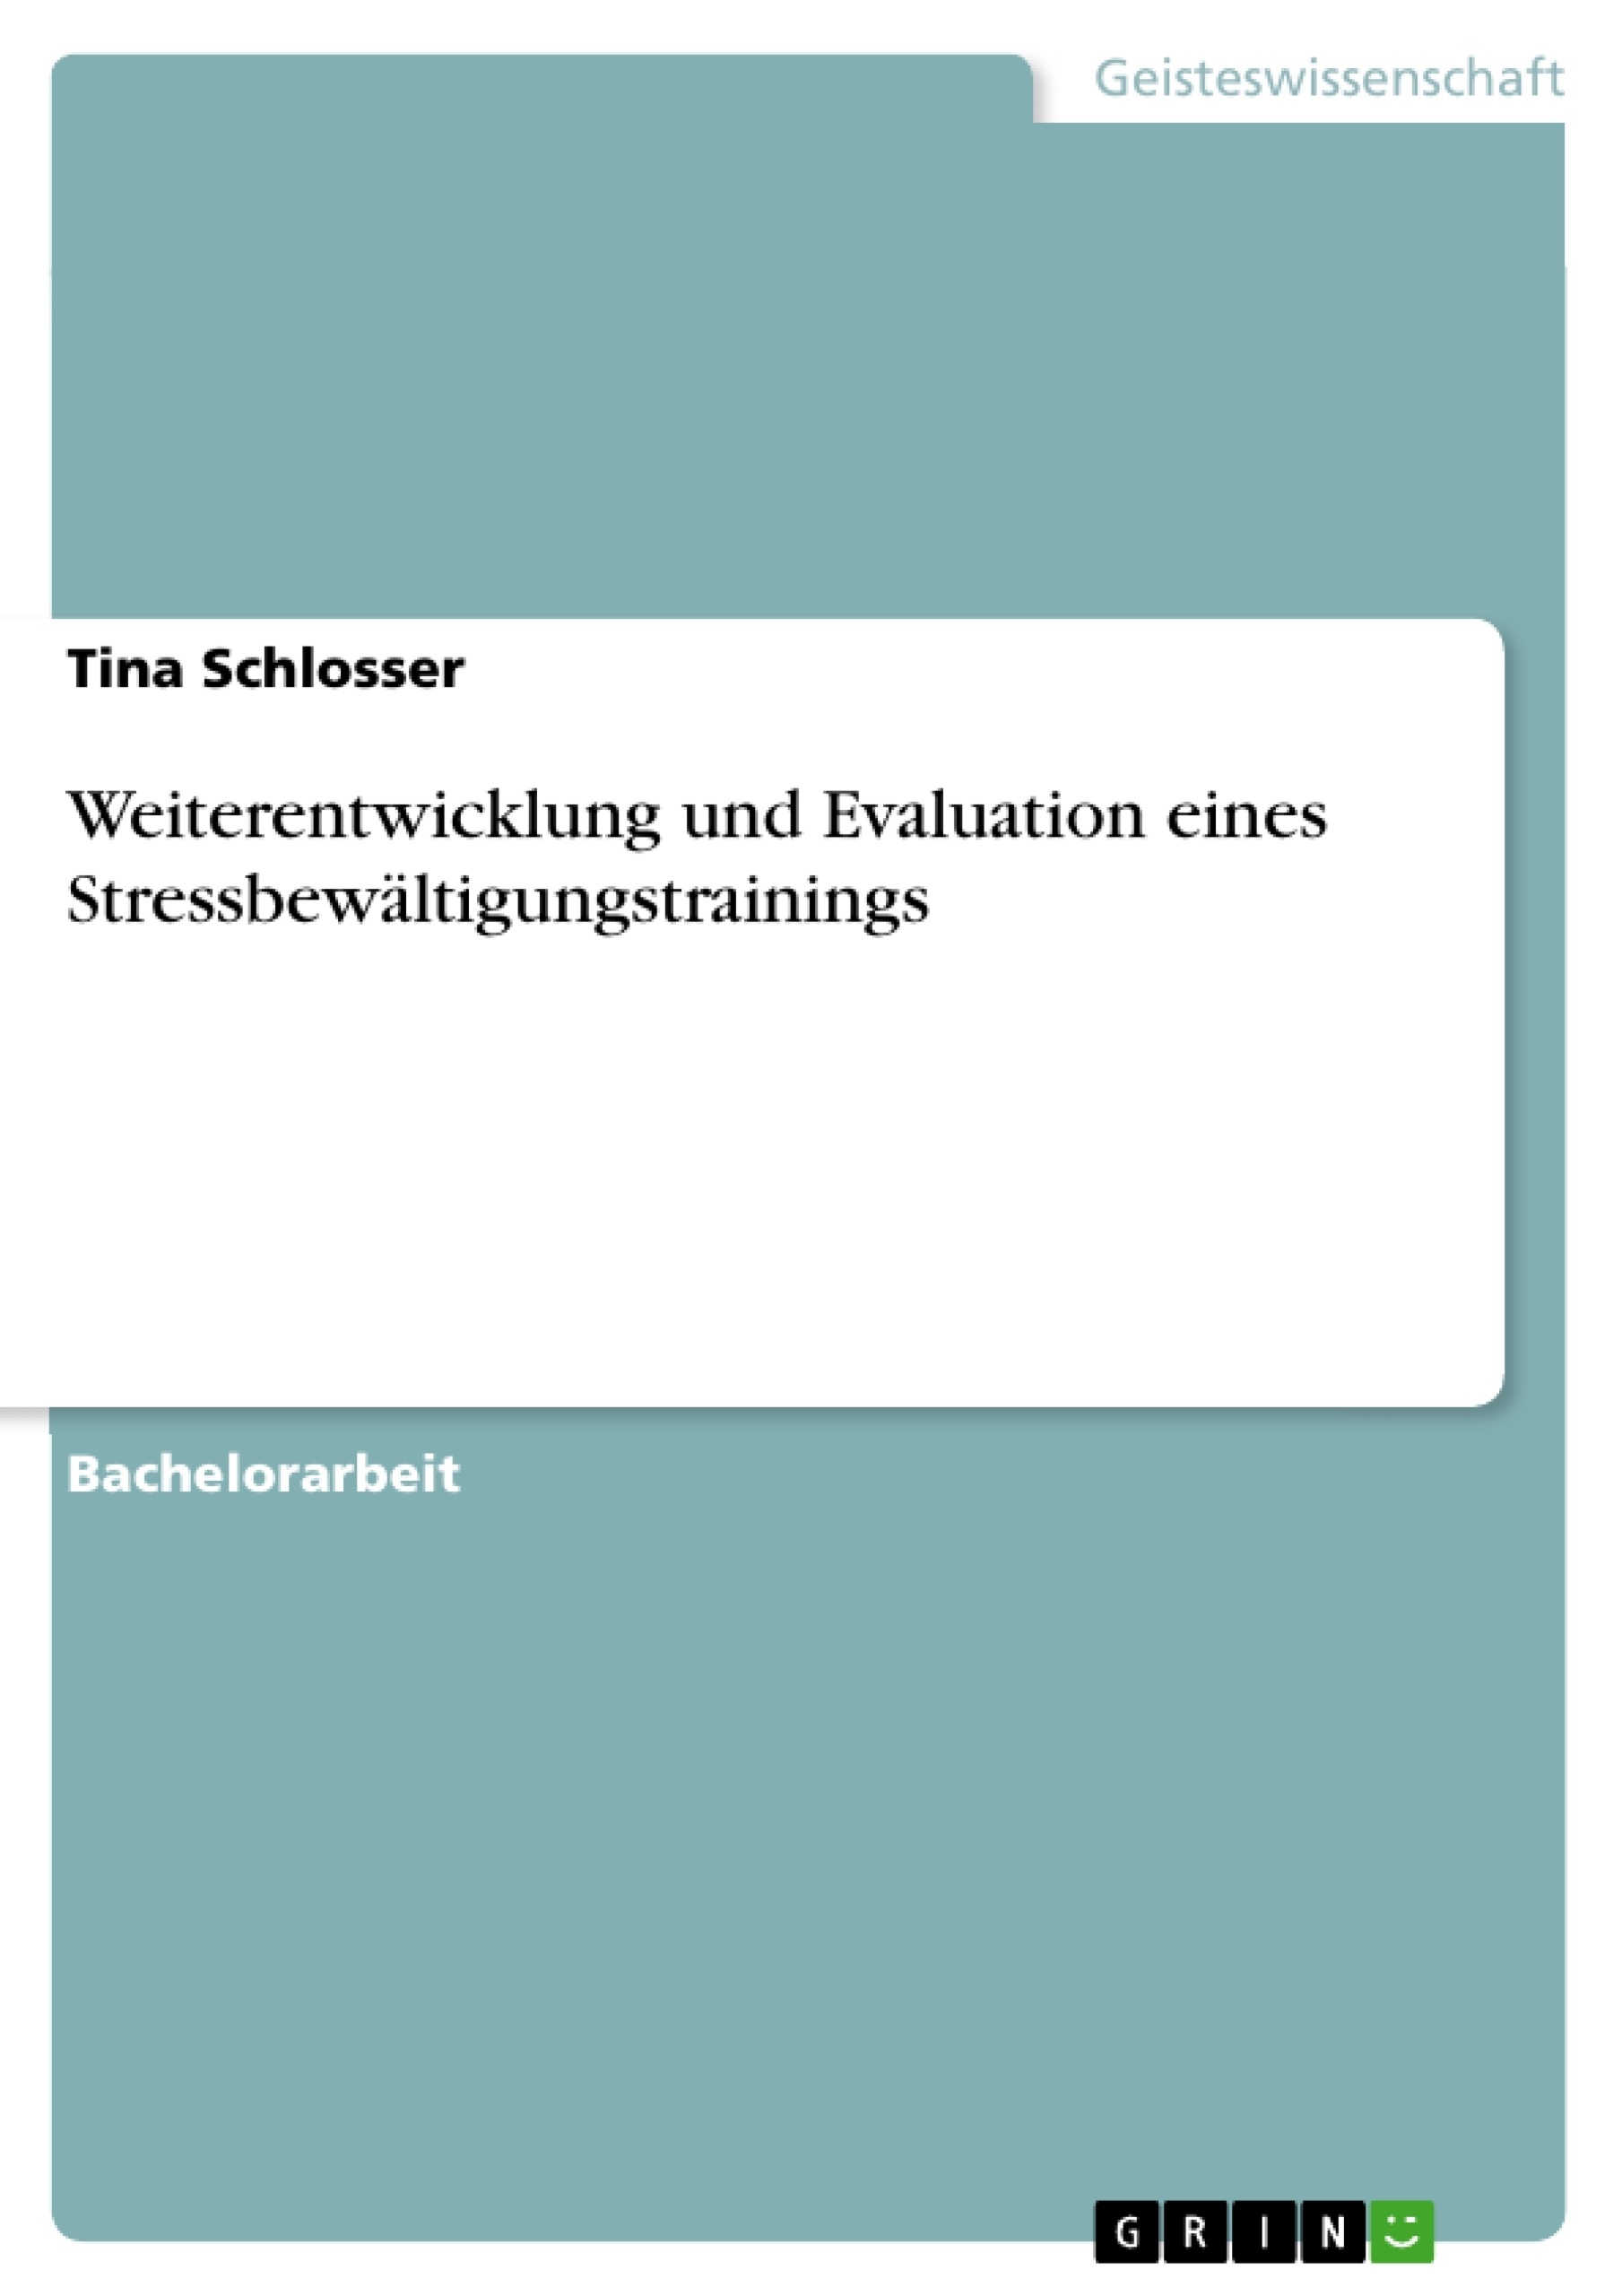 Titre: Weiterentwicklung und Evaluation eines Stressbewältigungstrainings